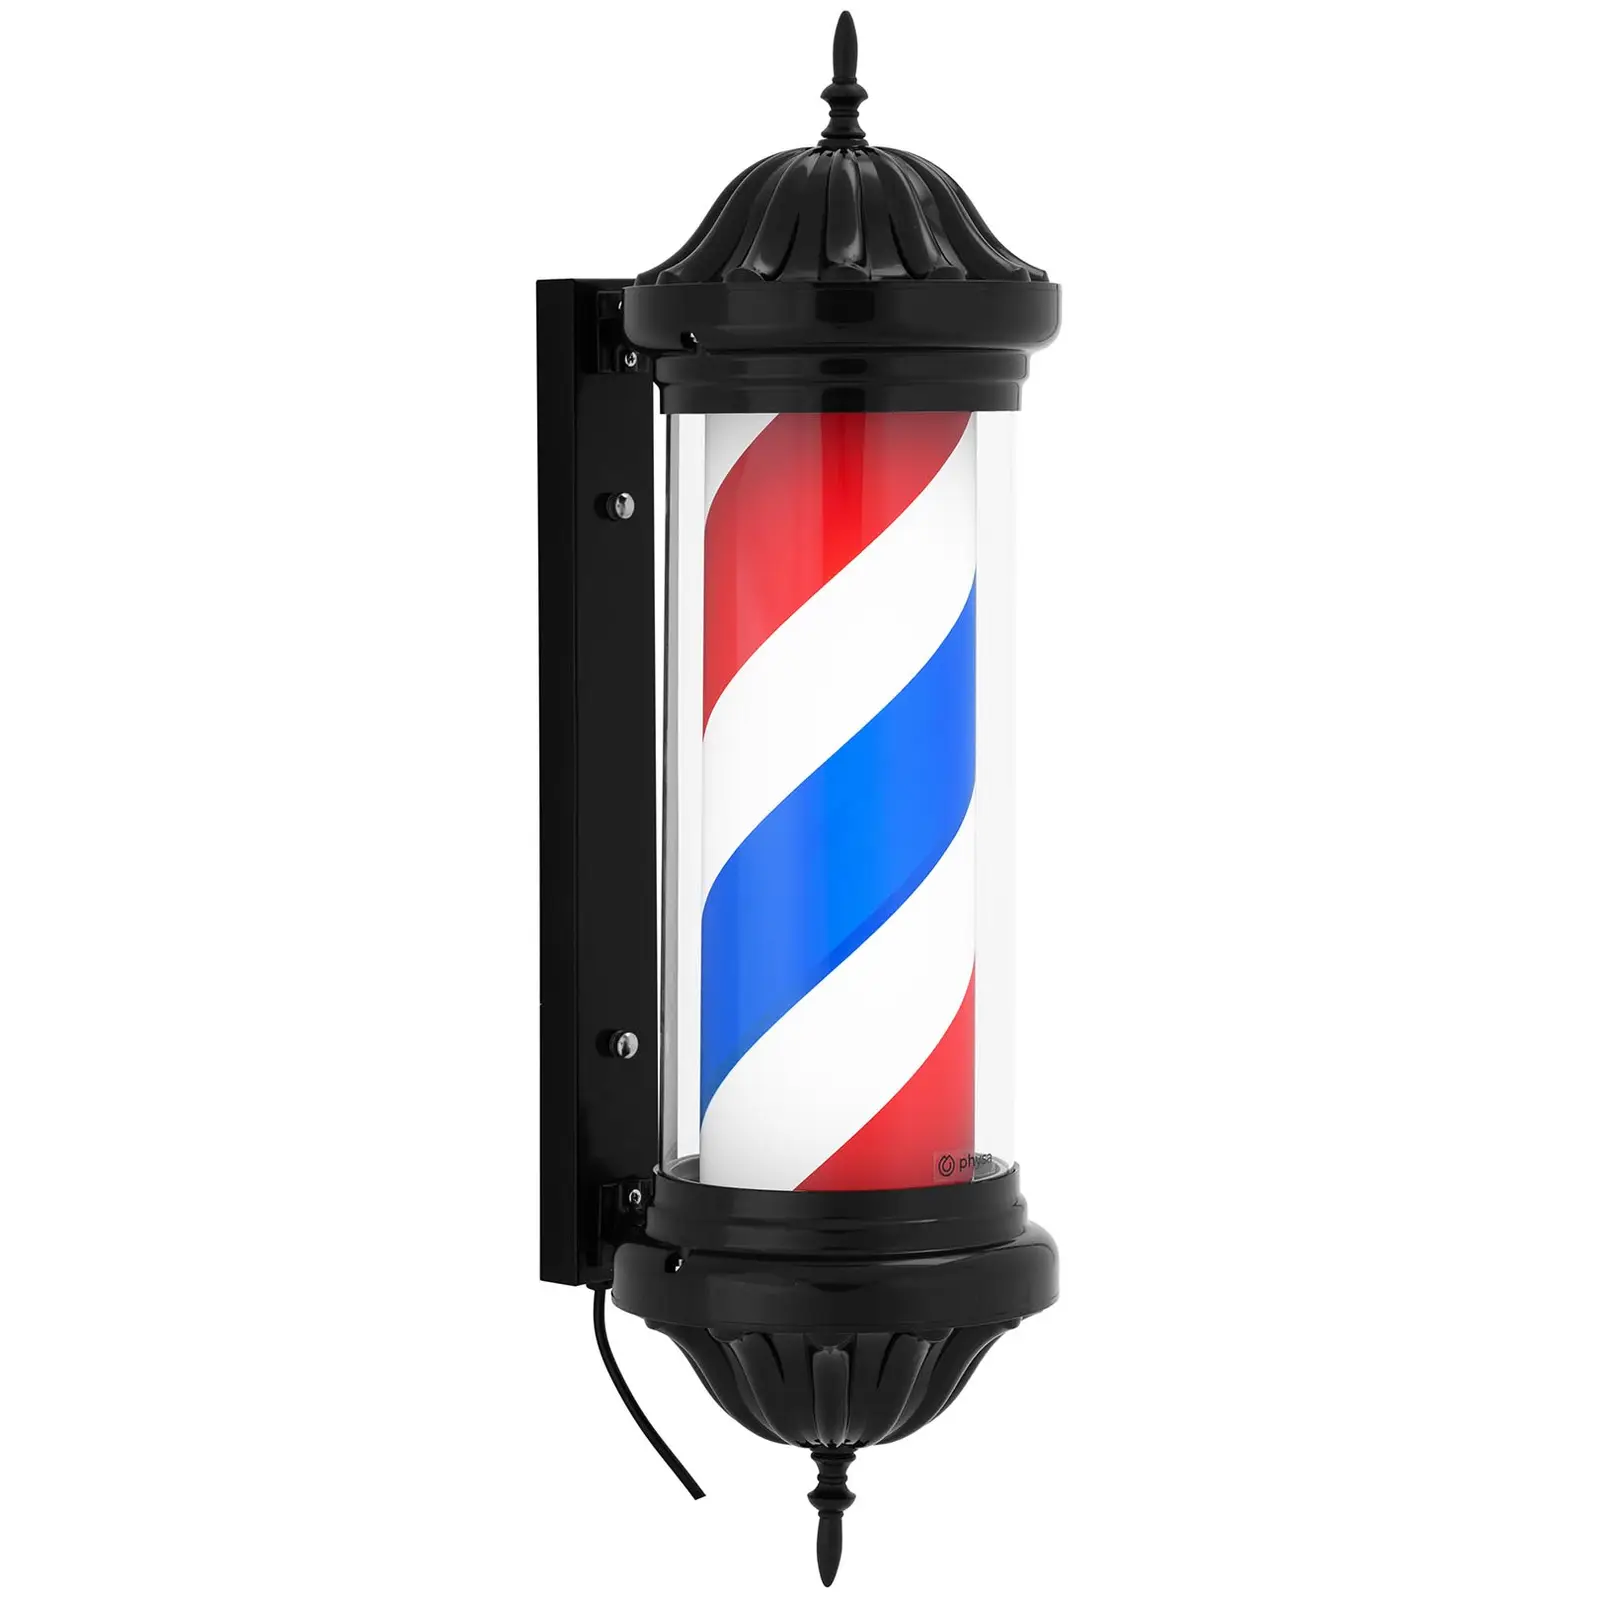 Barberstang - roterer og lyser - 380 mm høyde - 31 cm fra vegg - svart ramme